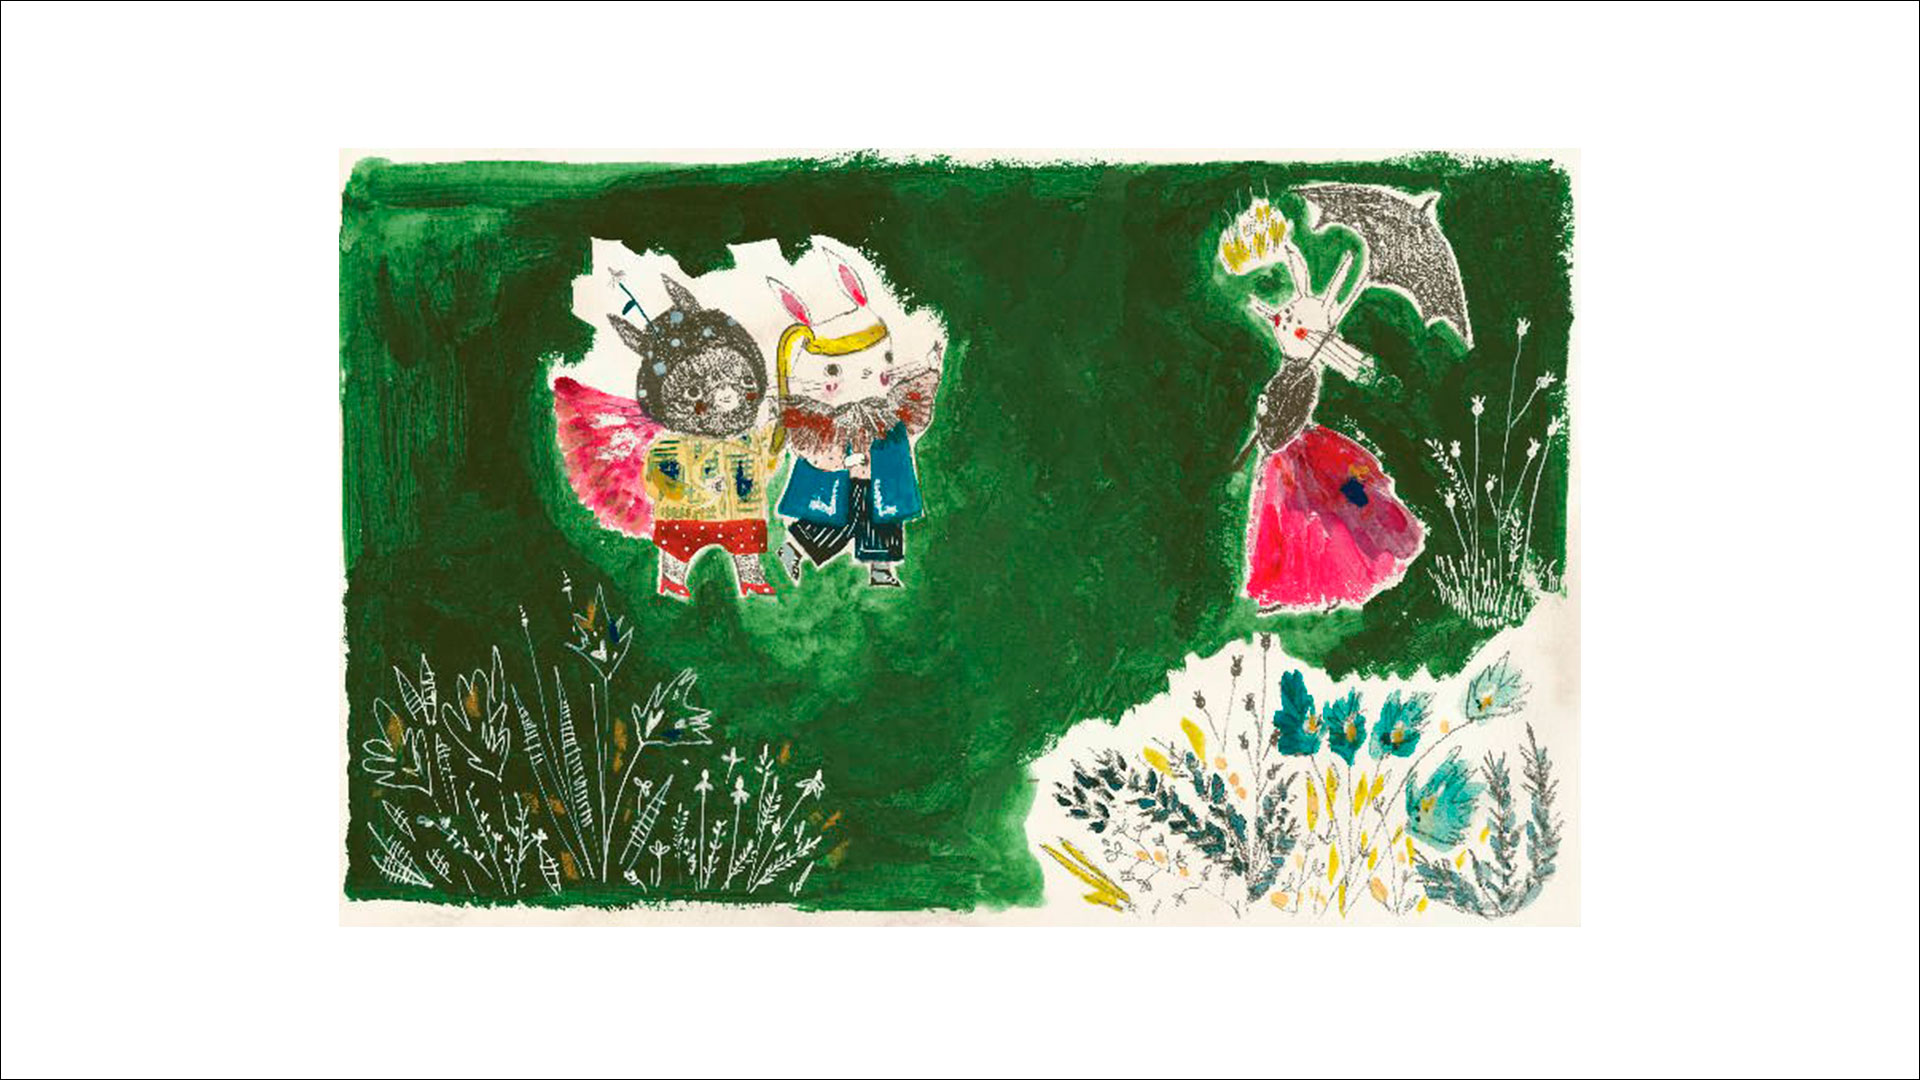 Ilustrações do livroPode Pegar mostram coelhos brincando em um jardim